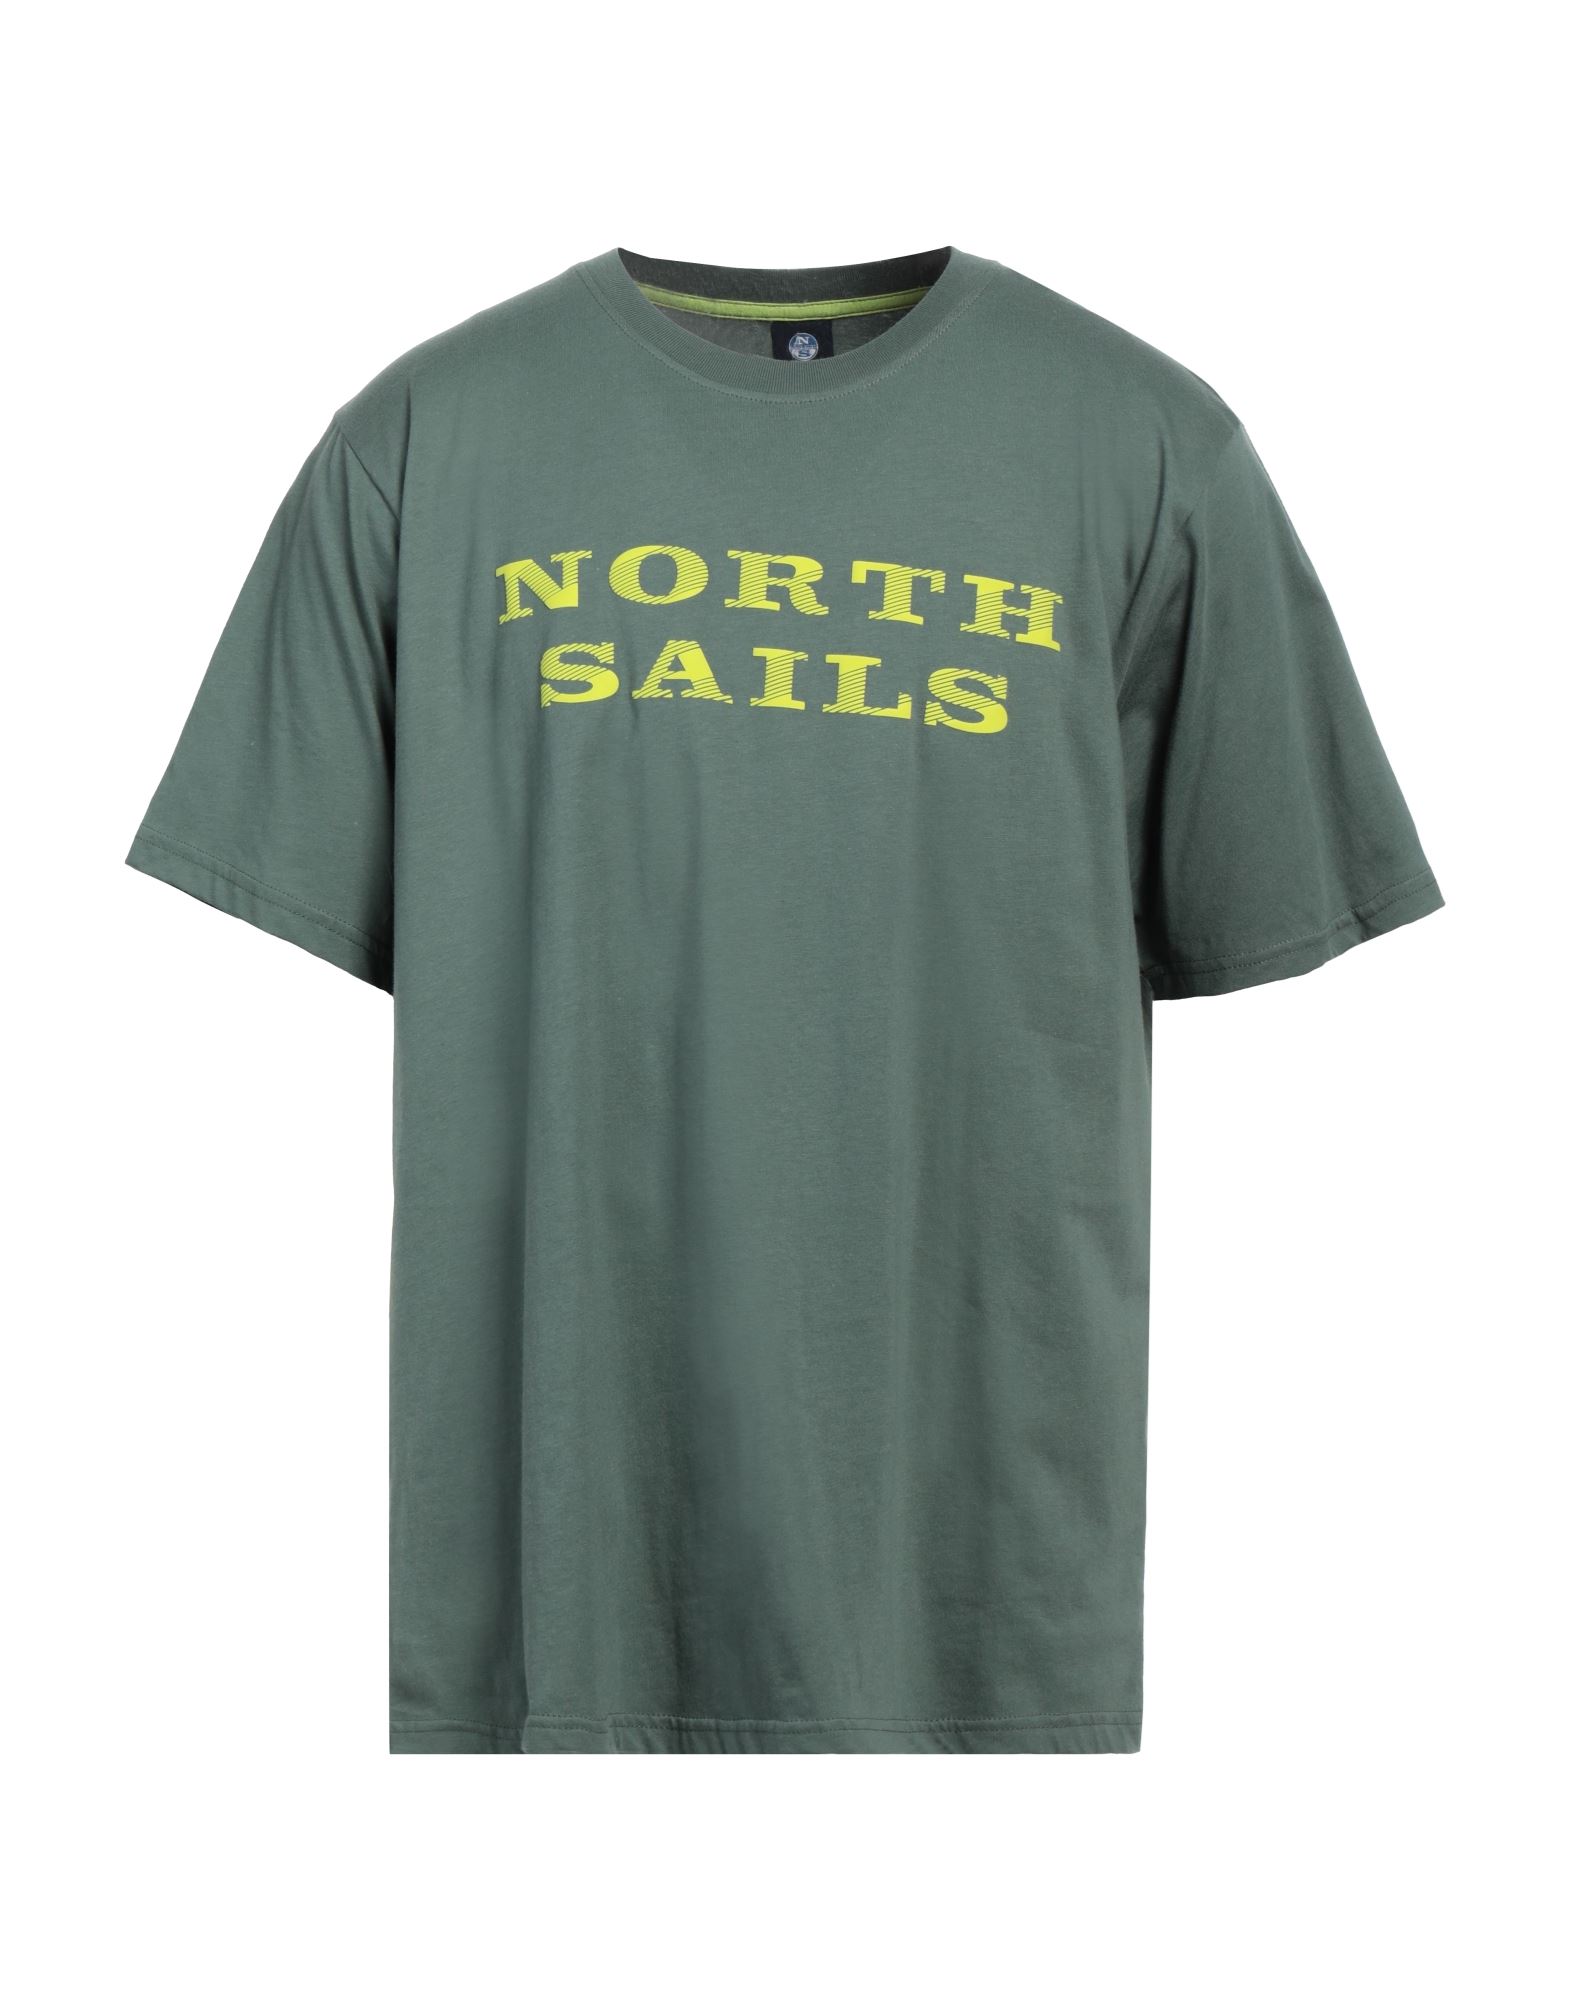 NORTH SAILS T-shirts Herren Militärgrün von NORTH SAILS